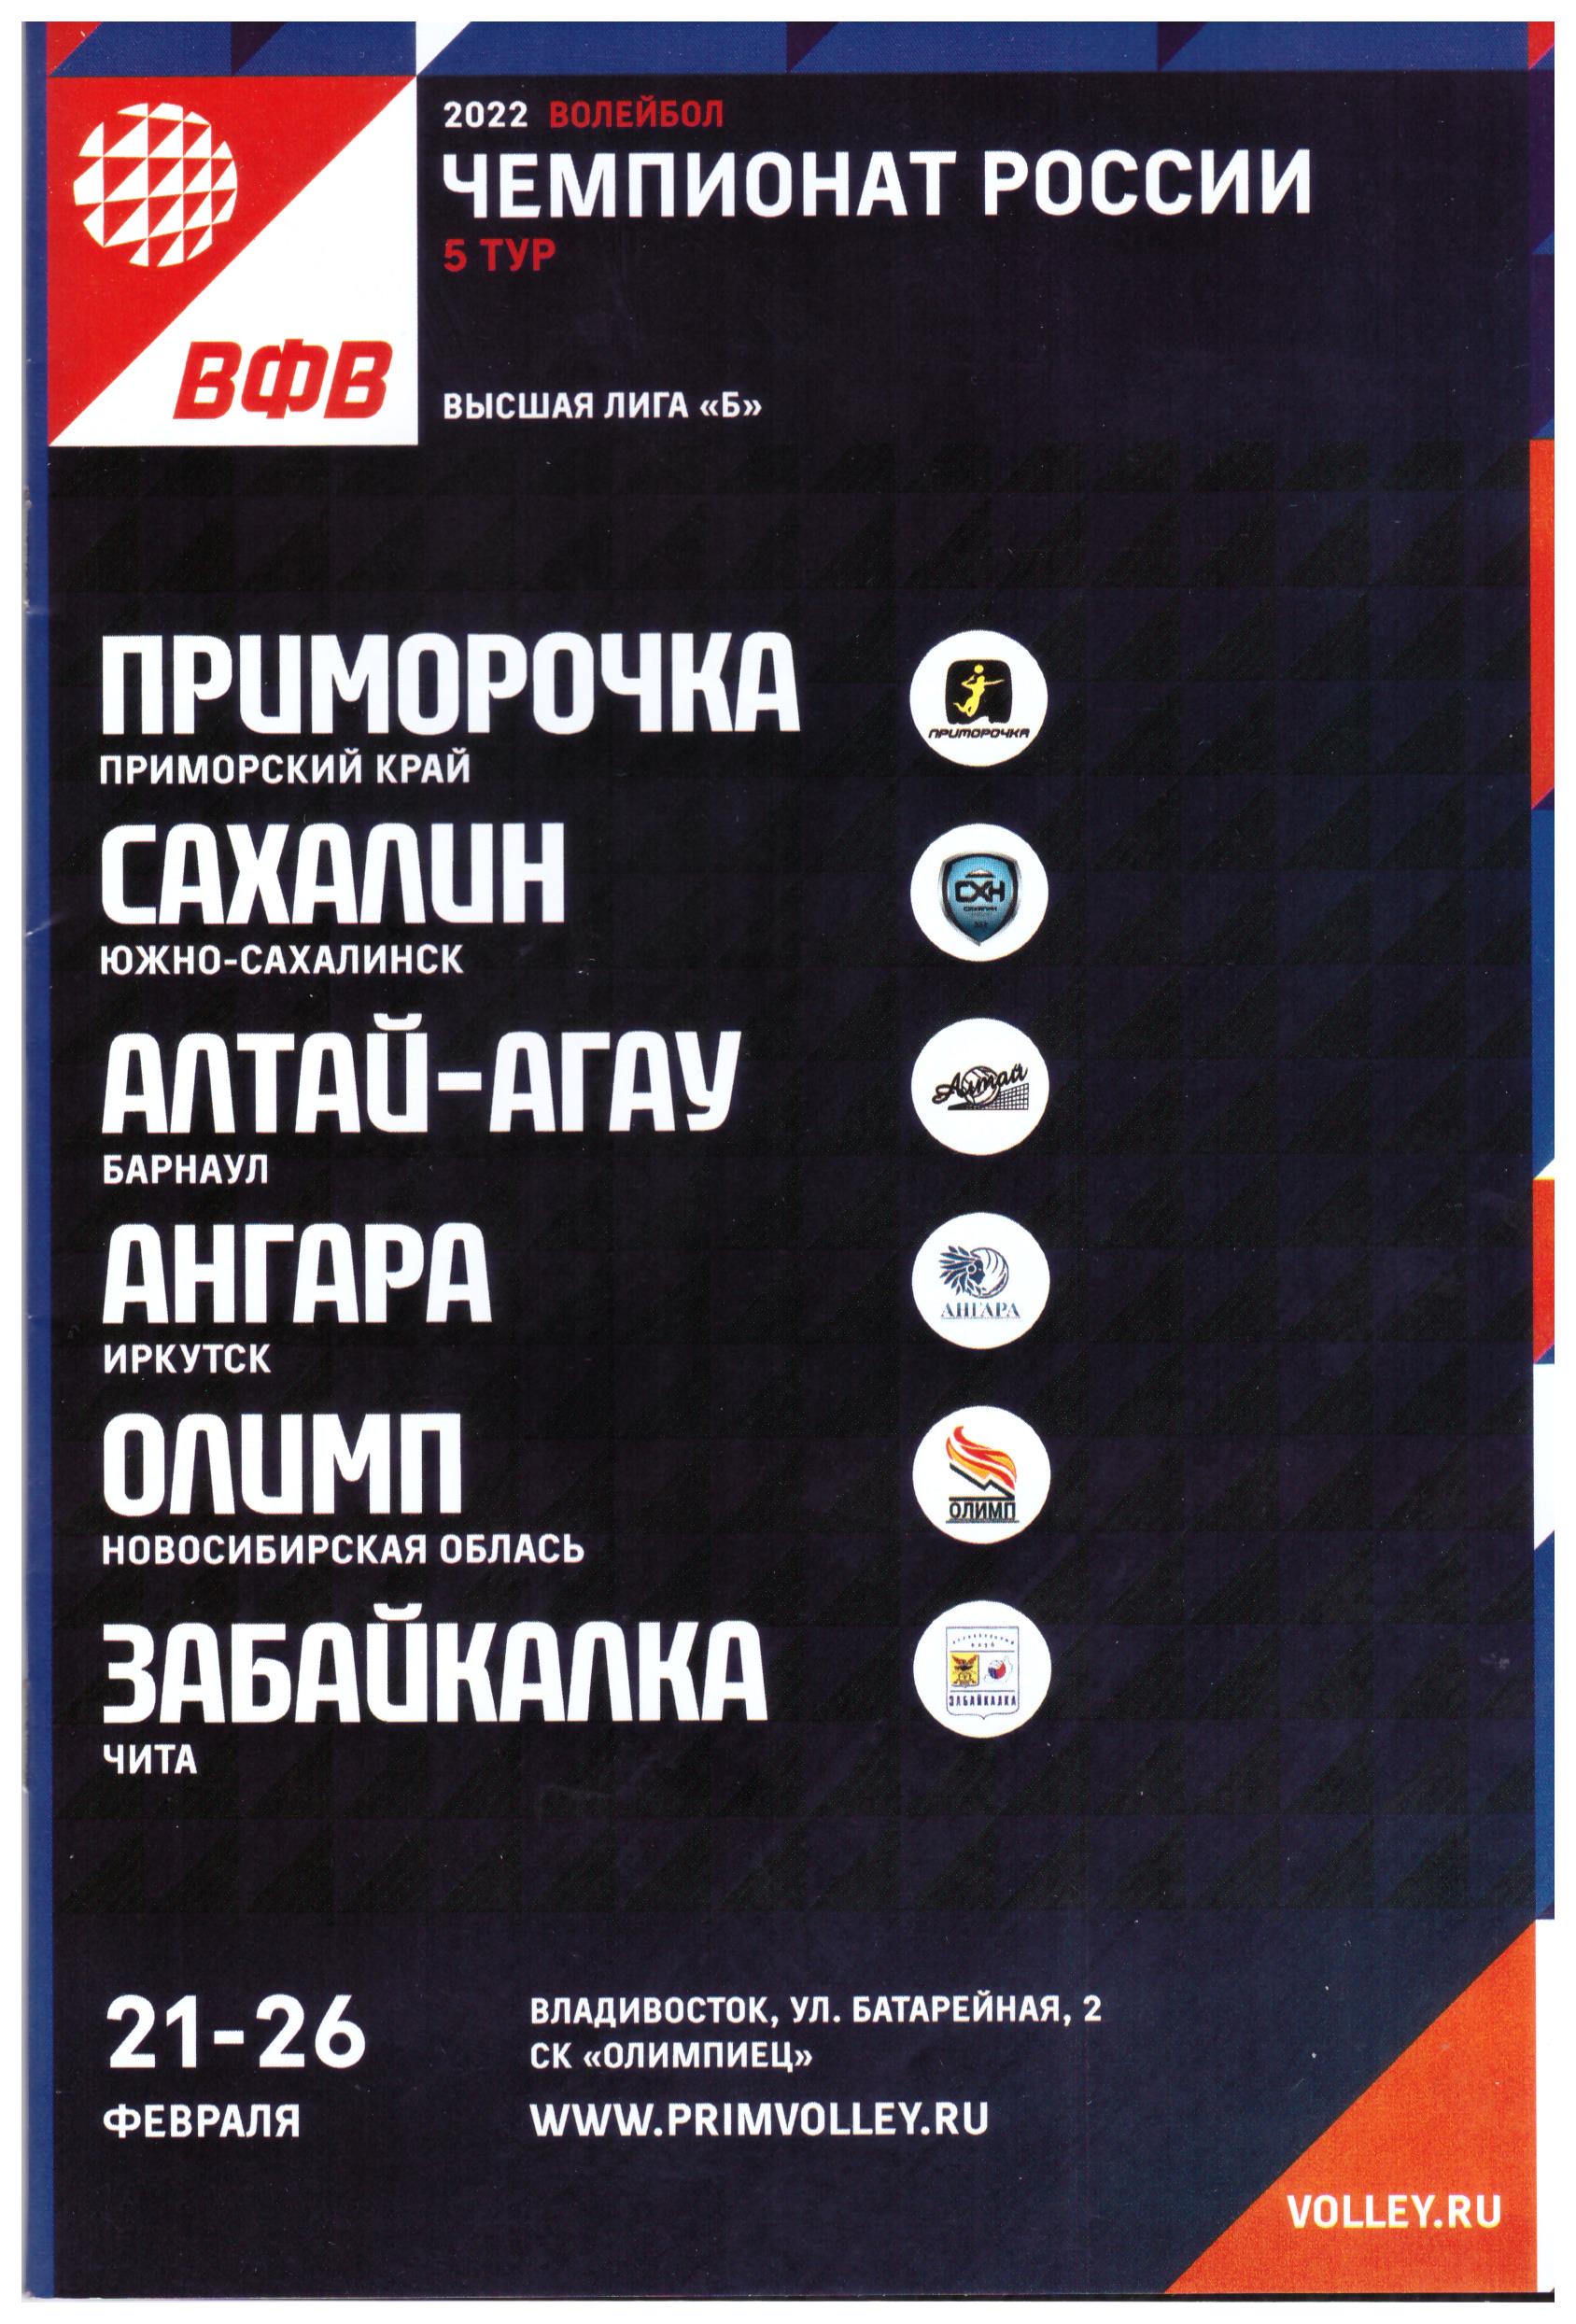 Тур высшей лиги "Б" во Владивостоке